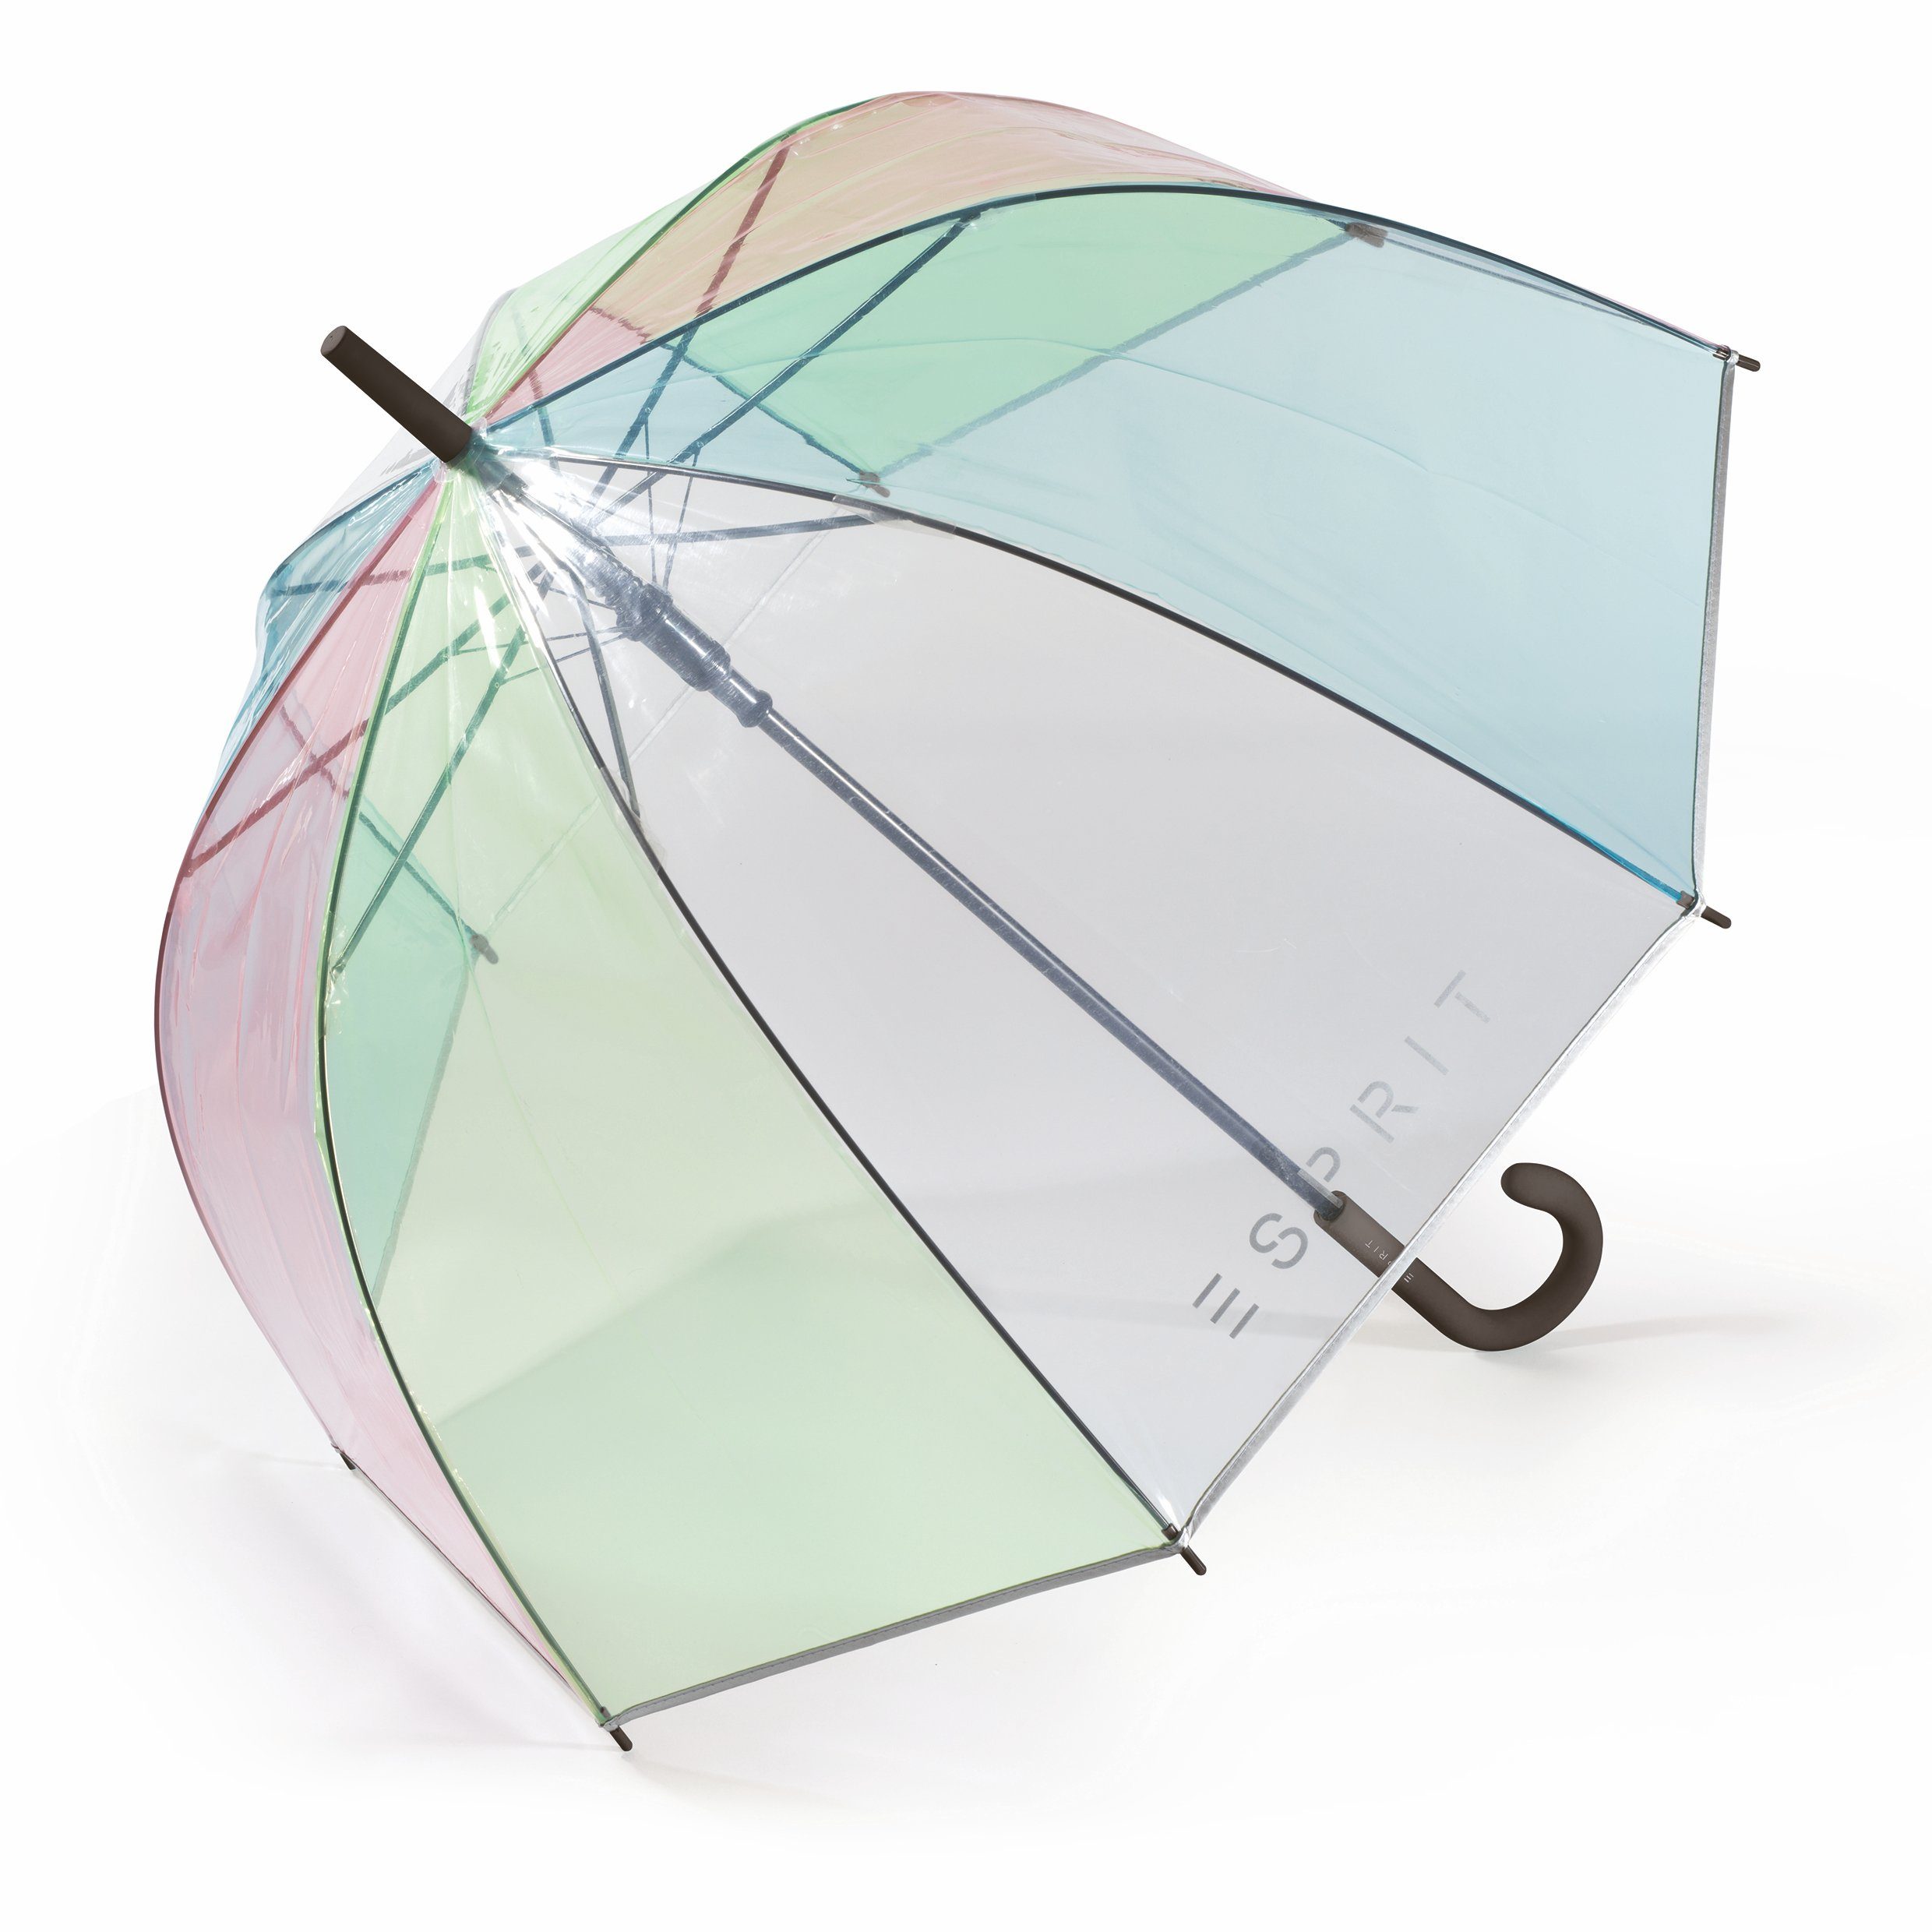 Esprit Stockregenschirm Automatik Regenschirm Glockenschirm durchsichtig, transparent rainbow, verschiedene Grifffarben